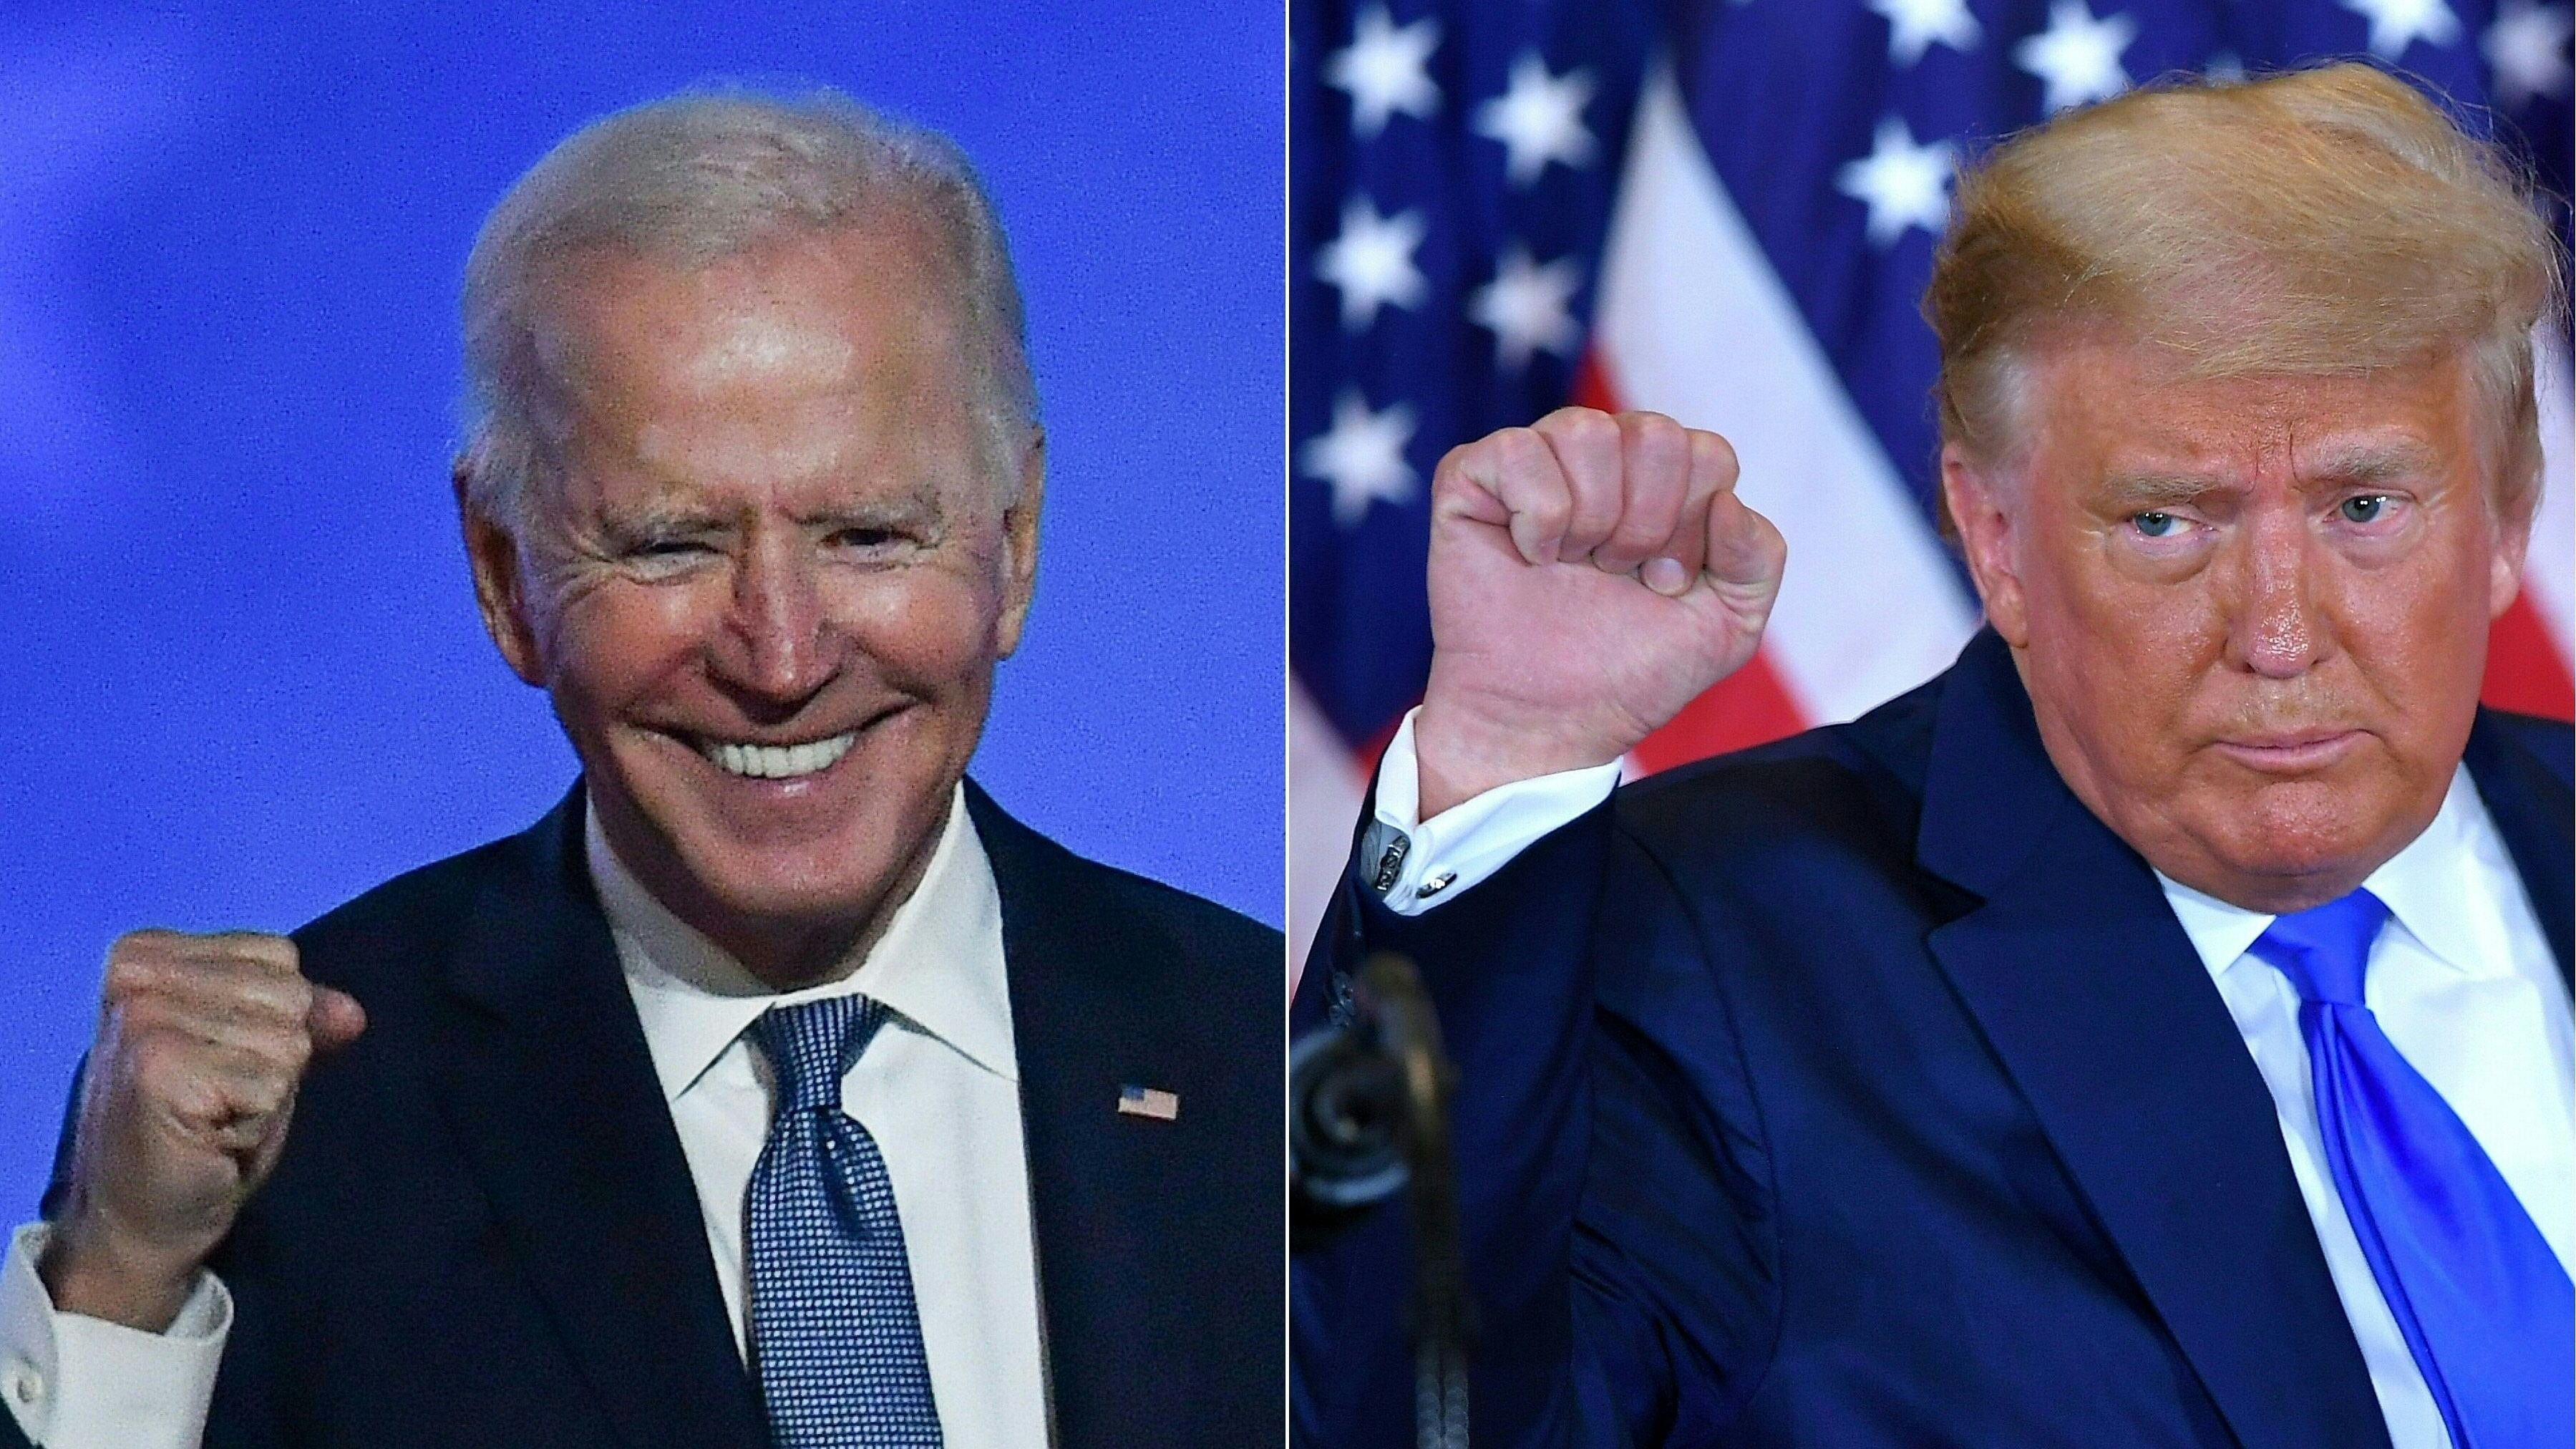 Joe Biden and Donald Trump. Credit: AFP Photo